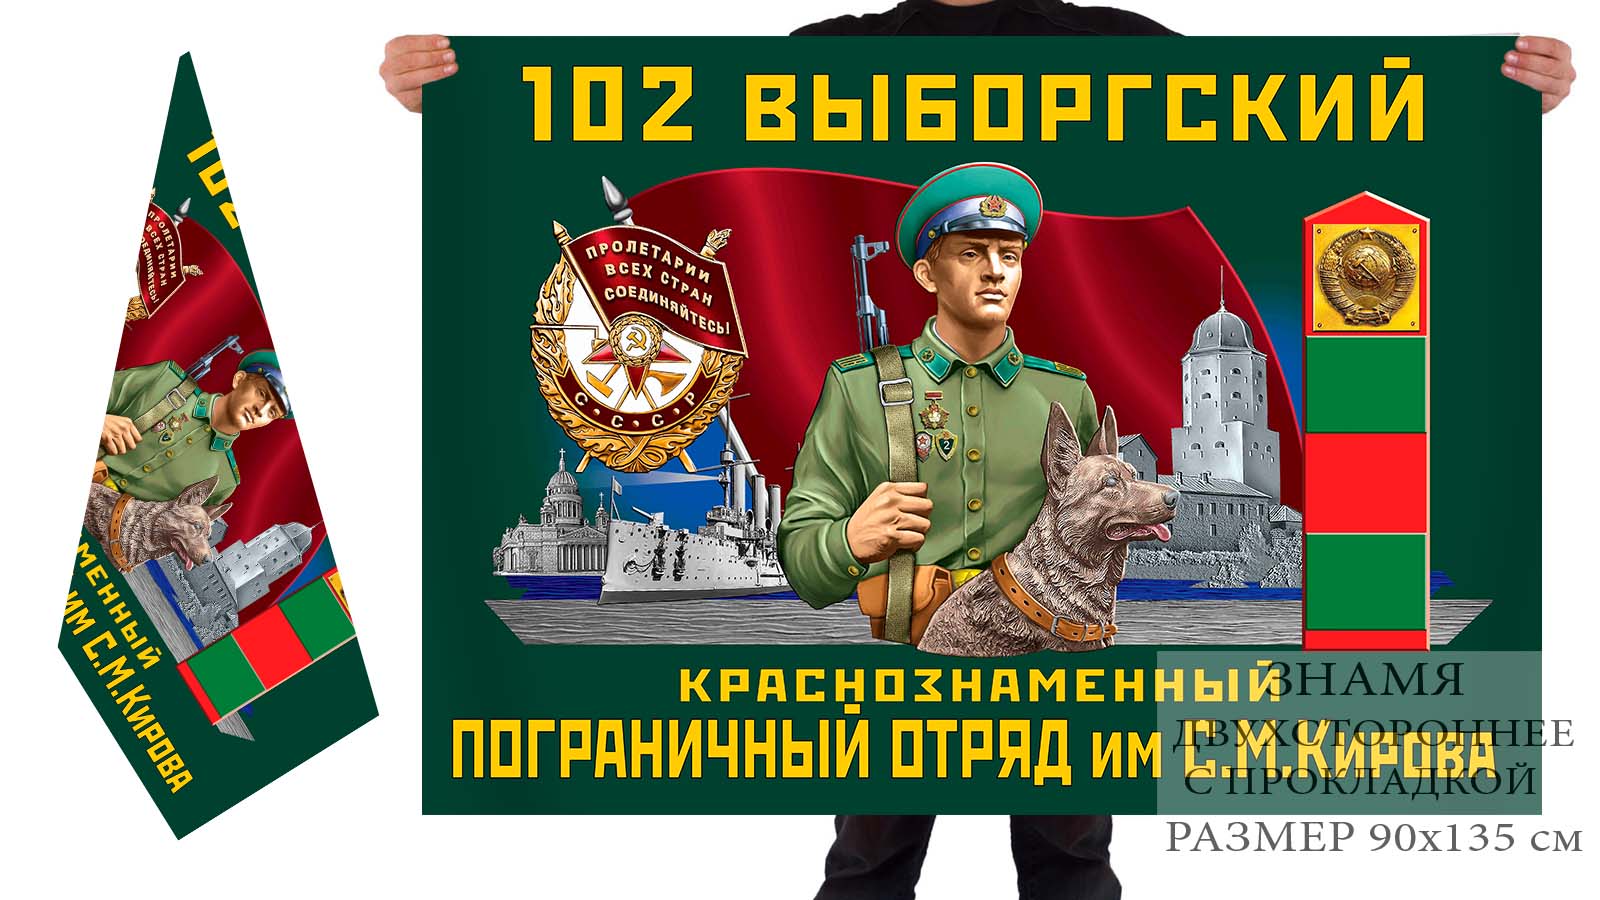 Двусторонний флаг 102 Выборгского погранотряда им. Кирова